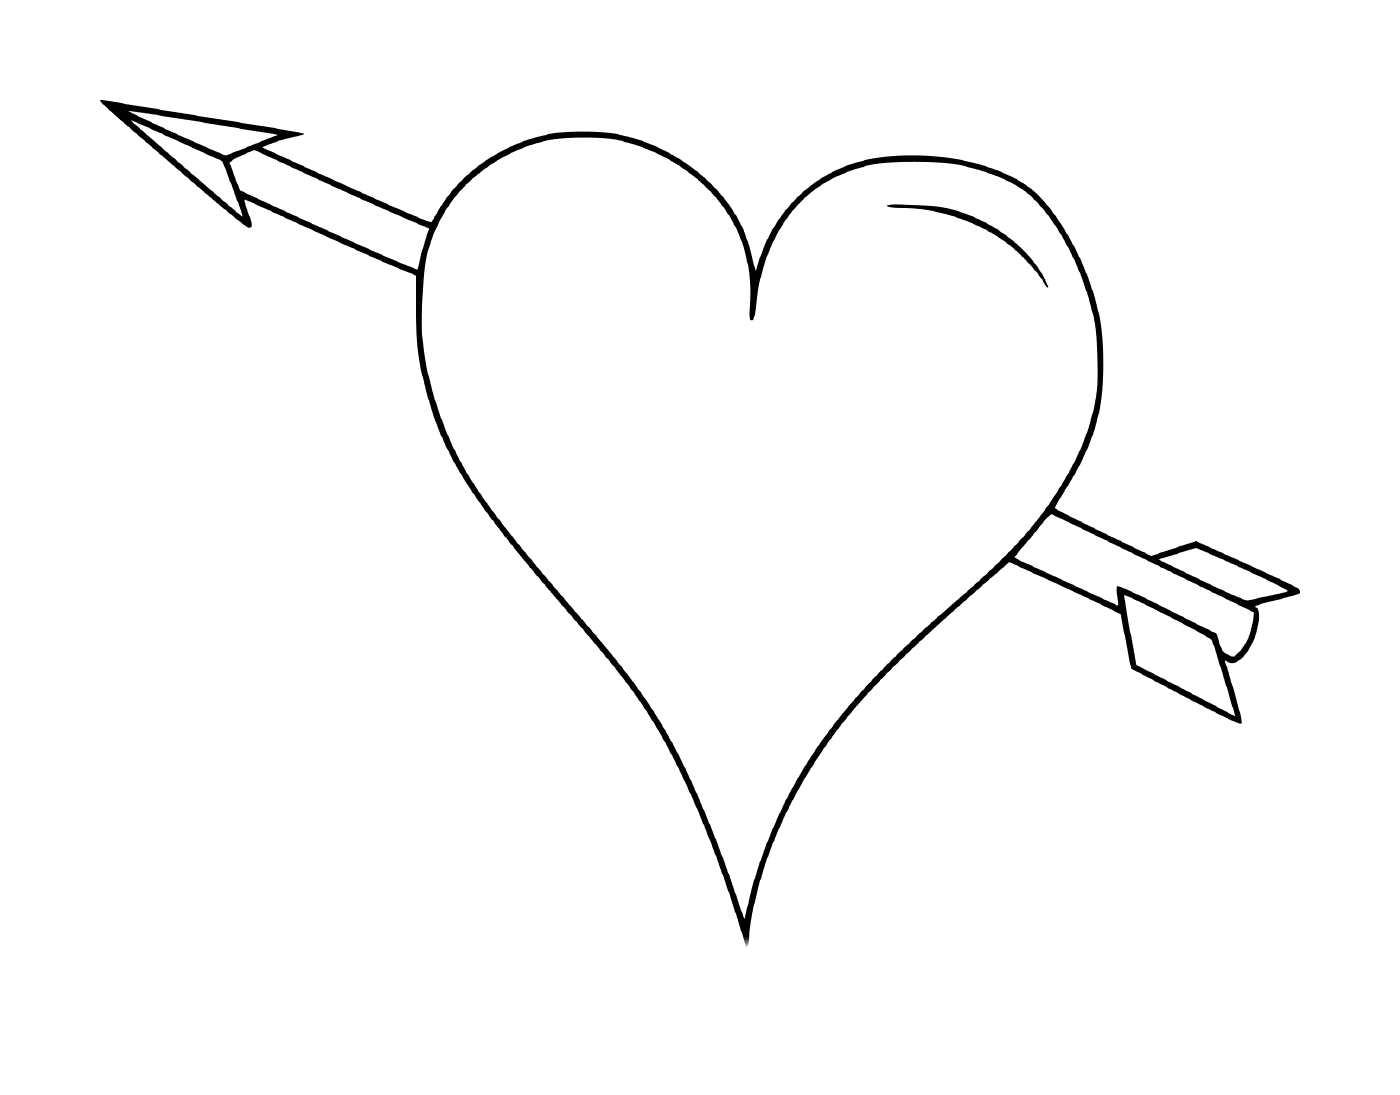  A heart with an arrow 